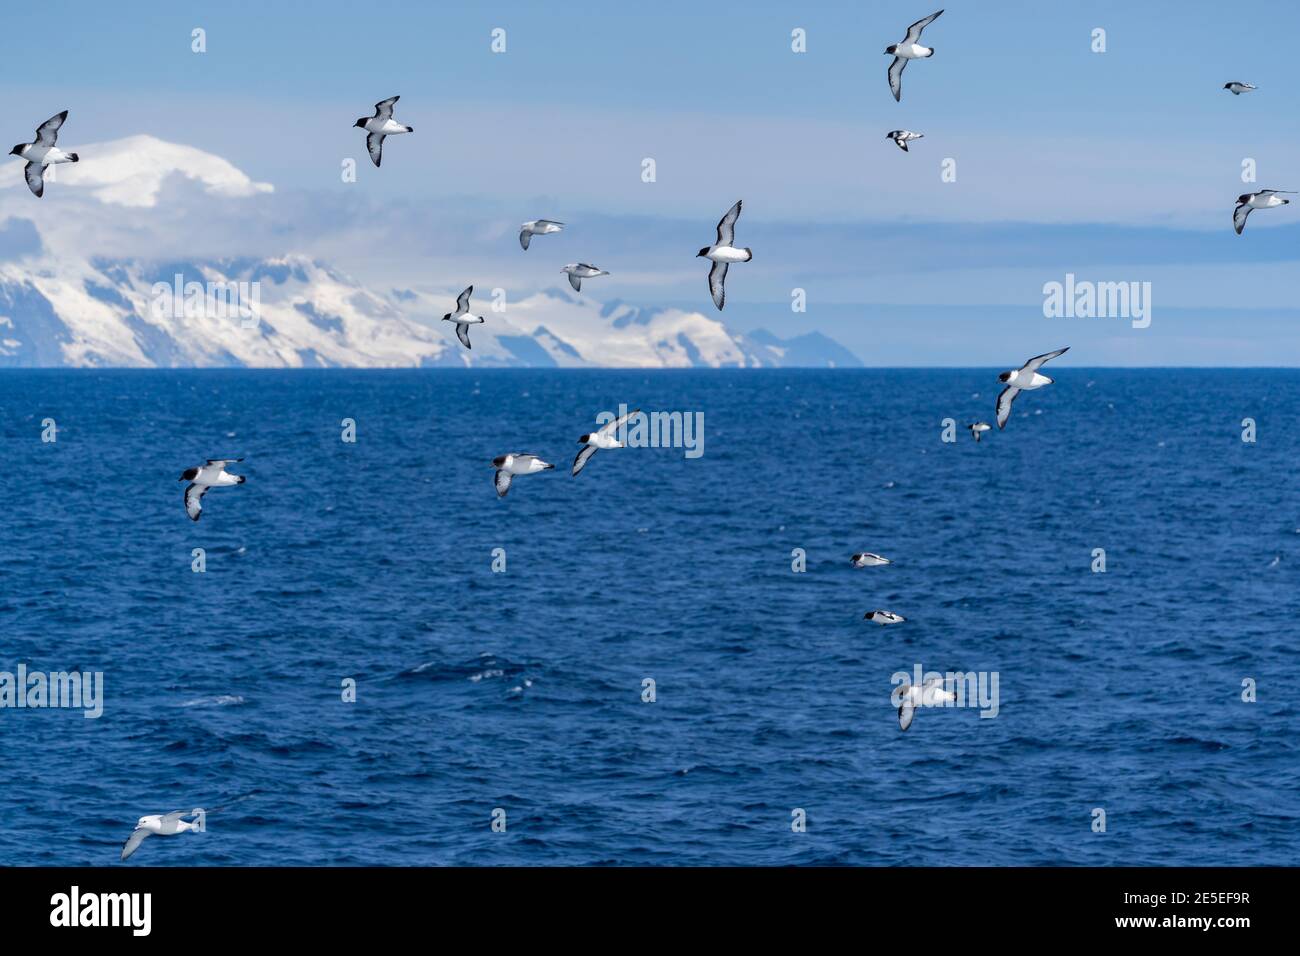 Kapsturmvögel (Pintados) mit einigen südlichen (antarktischen) Fulmaren fliegen hinter einem Schiff im südlichen Ozean nahe der Antarktischen Halbinsel, mit einem großen Glac Stockfoto